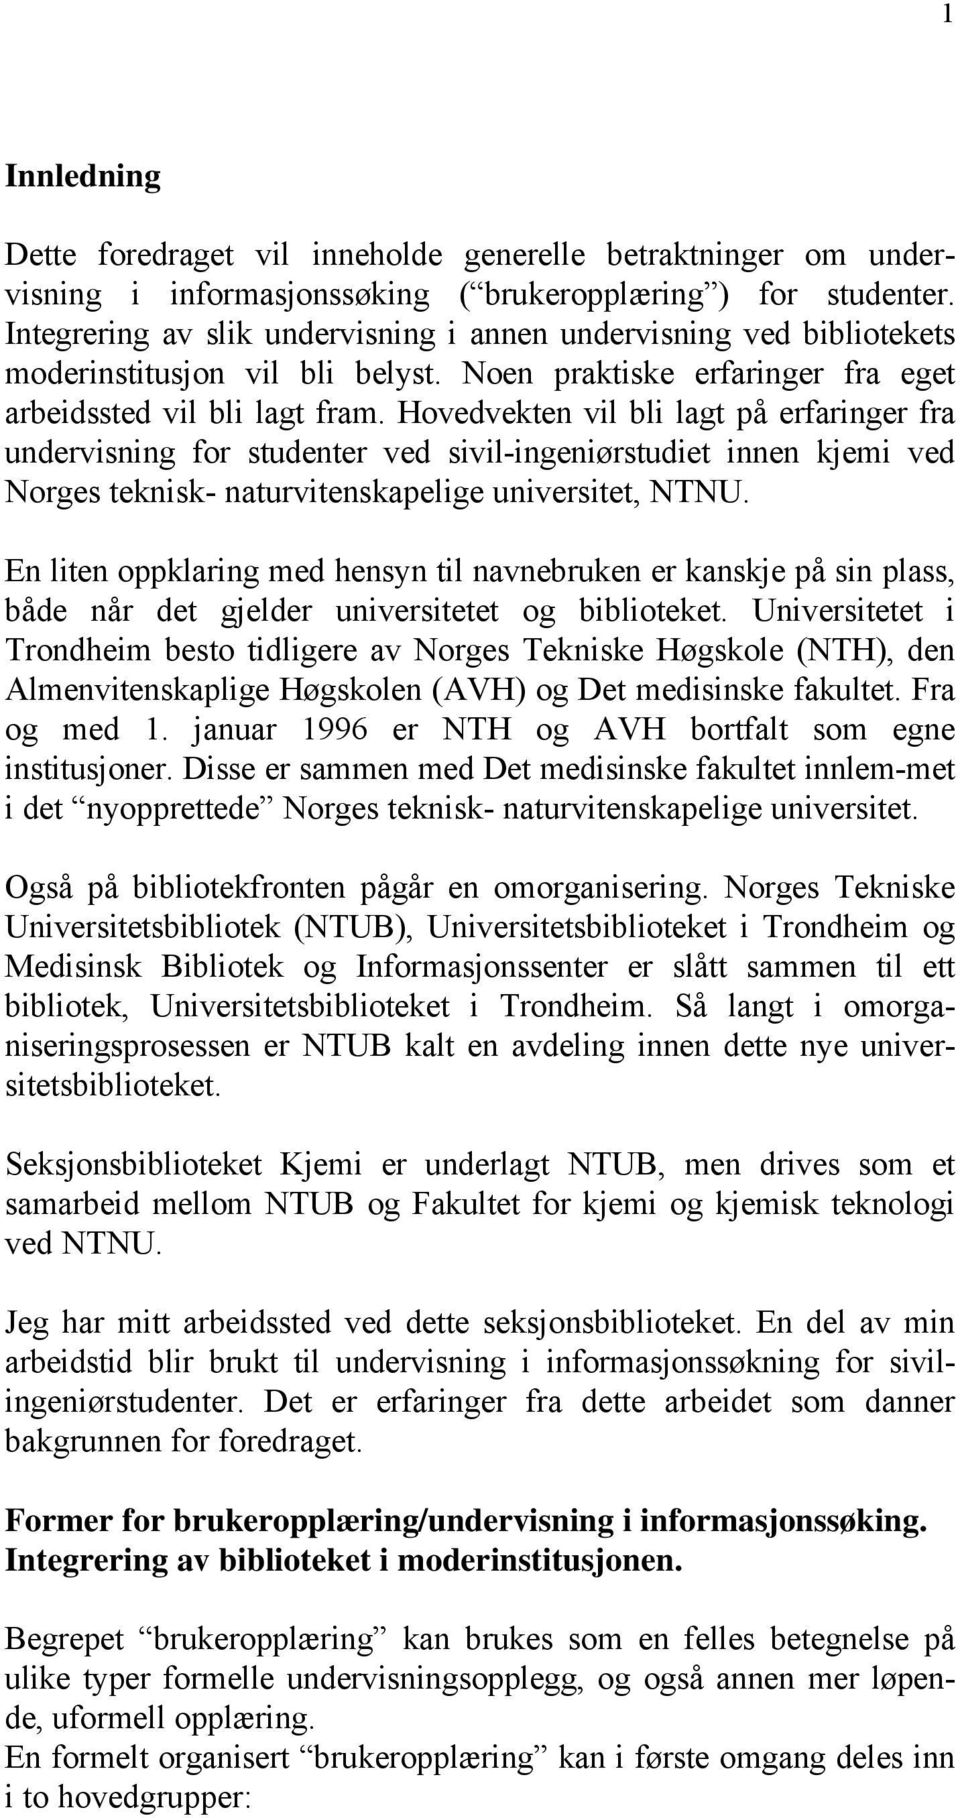 Hovedvekten vil bli lagt på erfaringer fra undervisning for studenter ved sivil-ingeniørstudiet innen kjemi ved Norges teknisk- naturvitenskapelige universitet, NTNU.